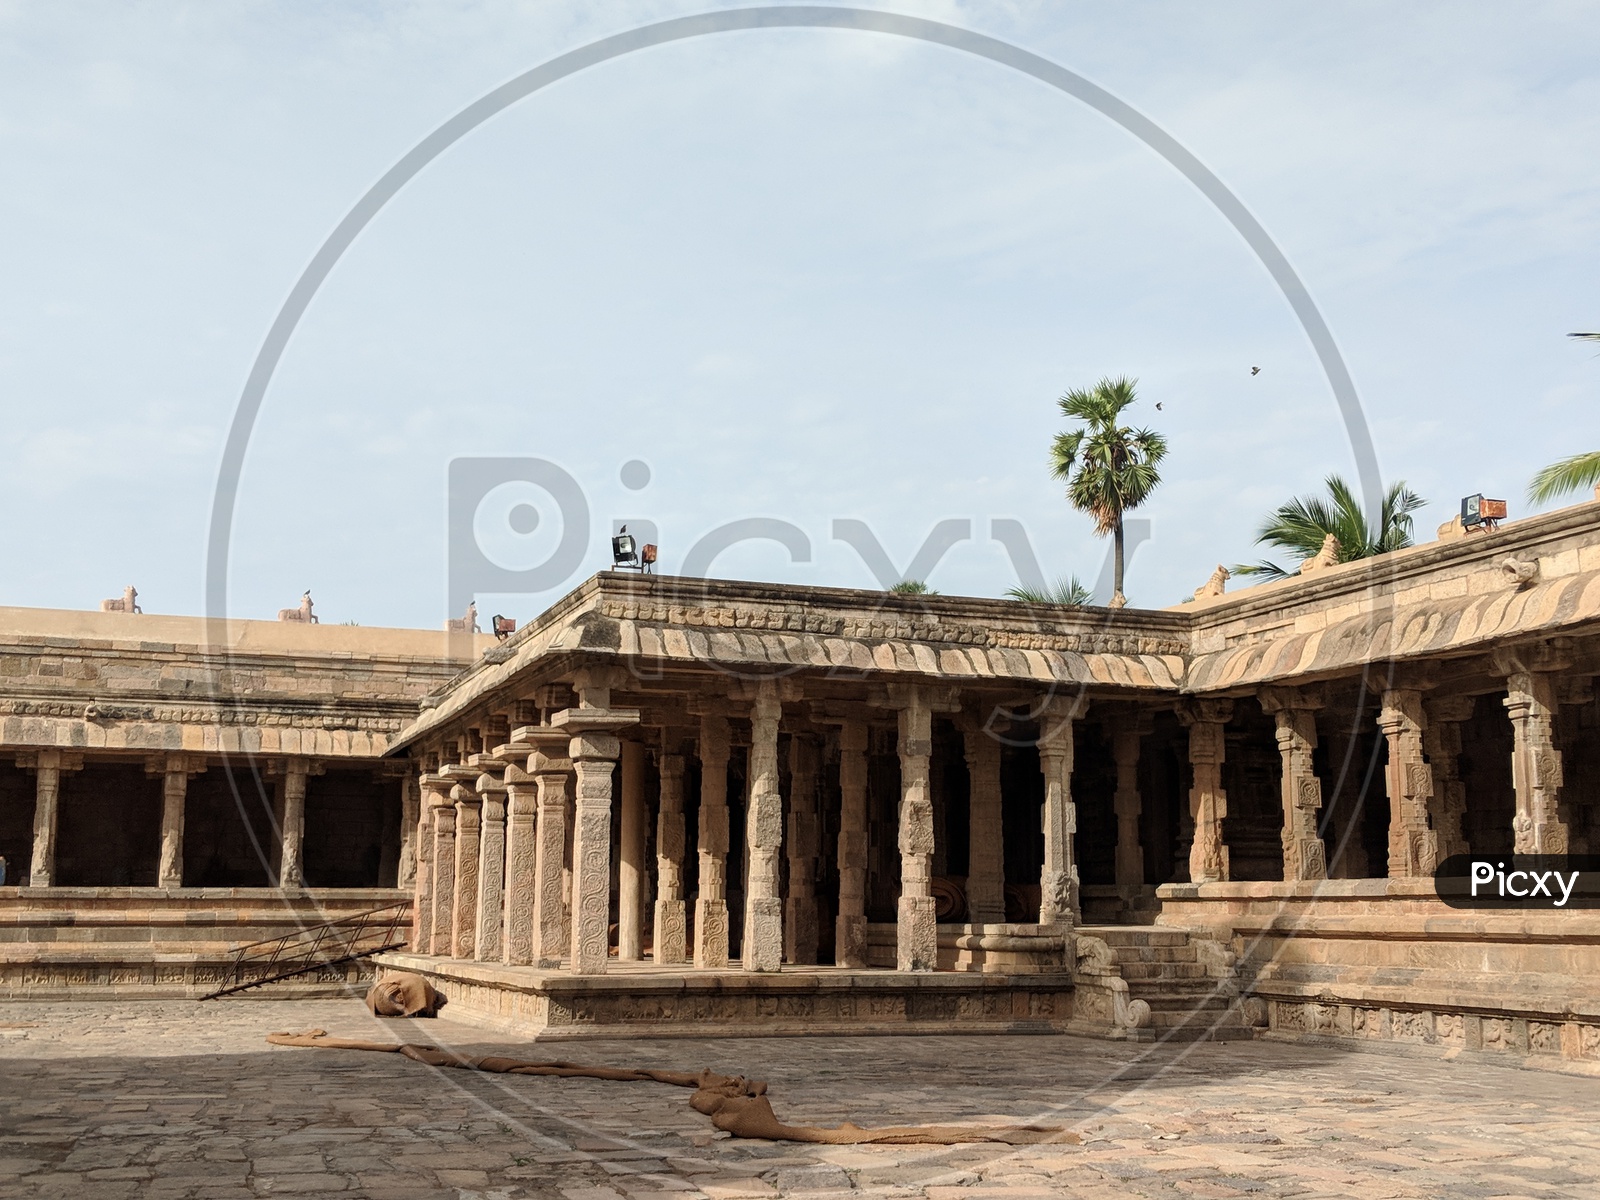 Airavatesvara Temple (UNSECO)